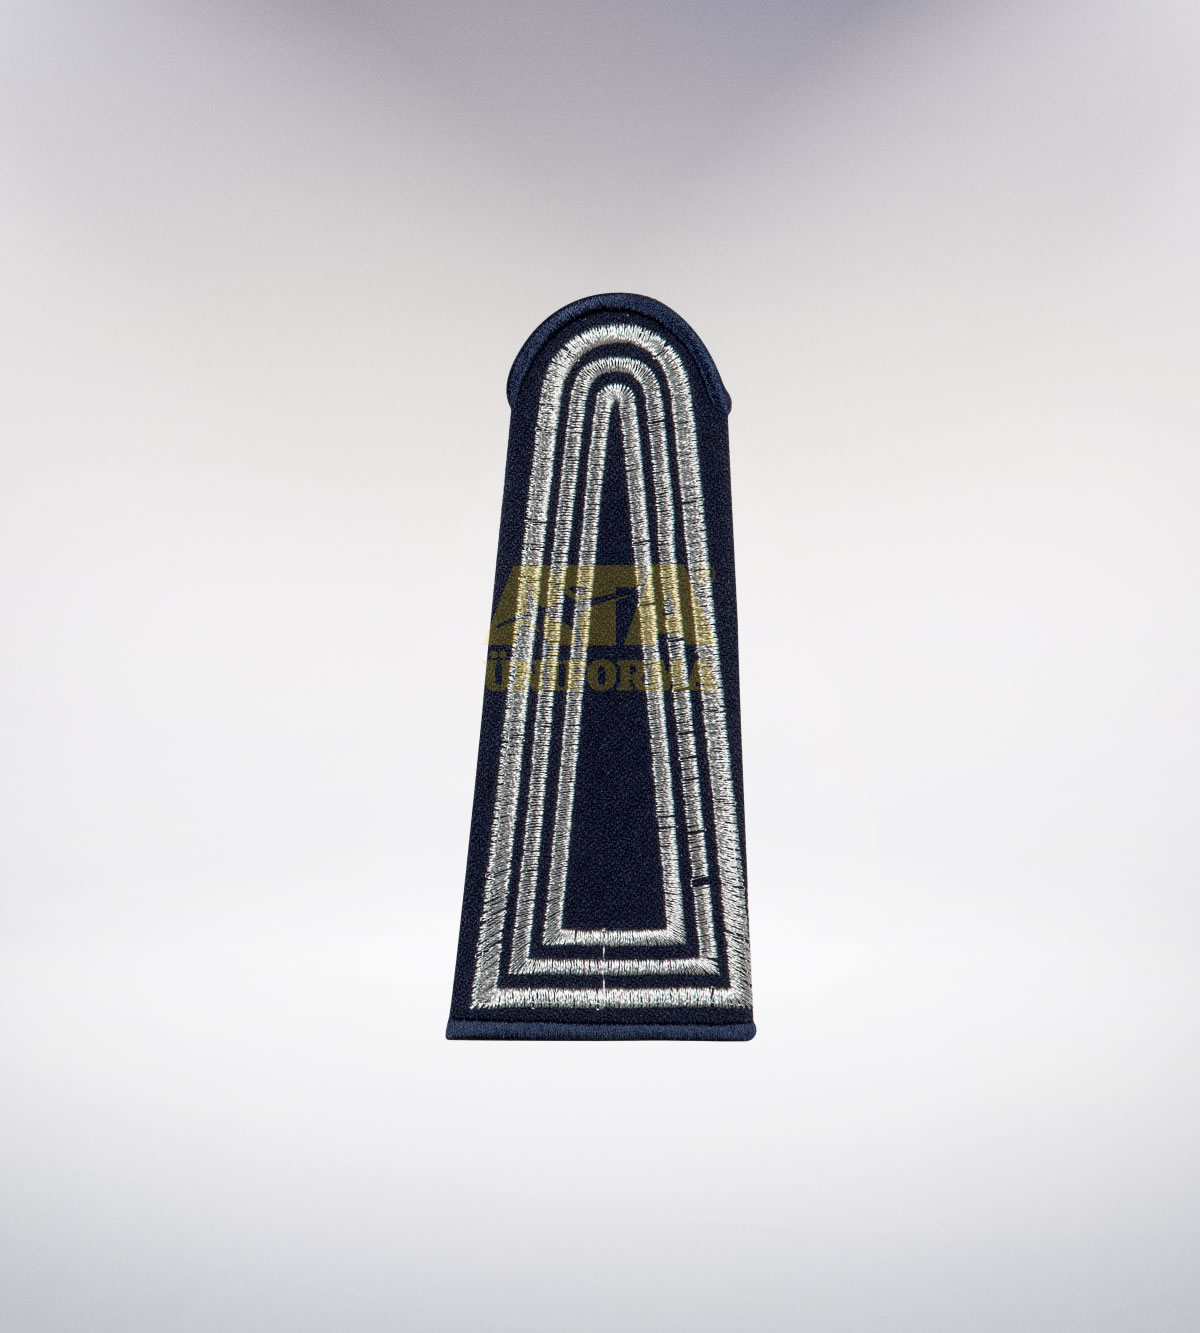 ATA-1009 Zabıta nakışlı apolet - zabıta elbiseleri | zabıta üniformaları | zabıta kıyafetleri